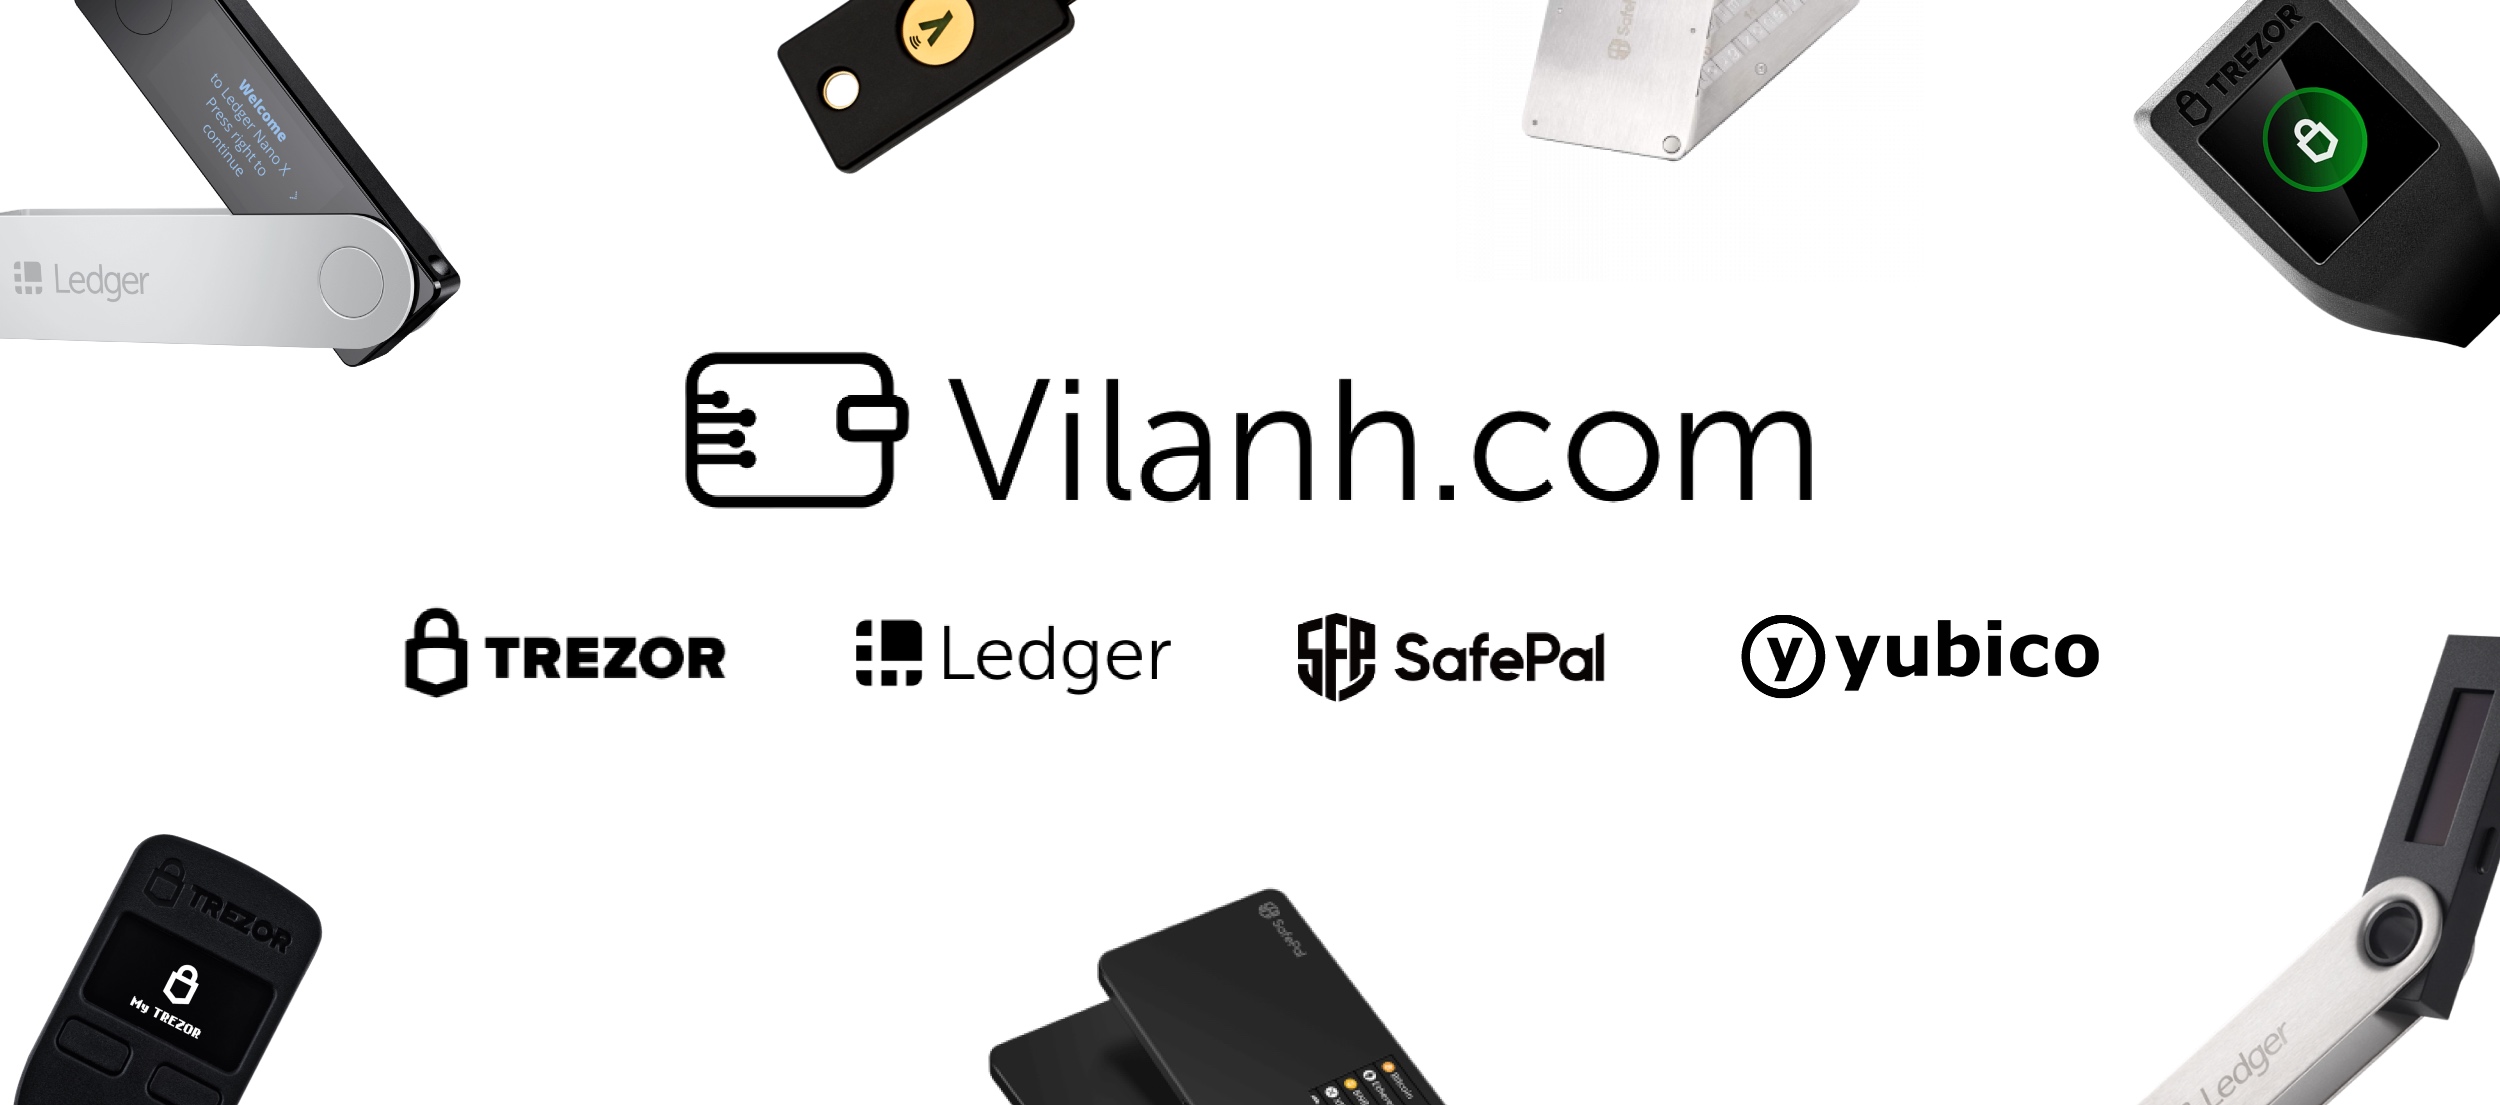 Vilanh.com - Ví Lạnh chính hãng